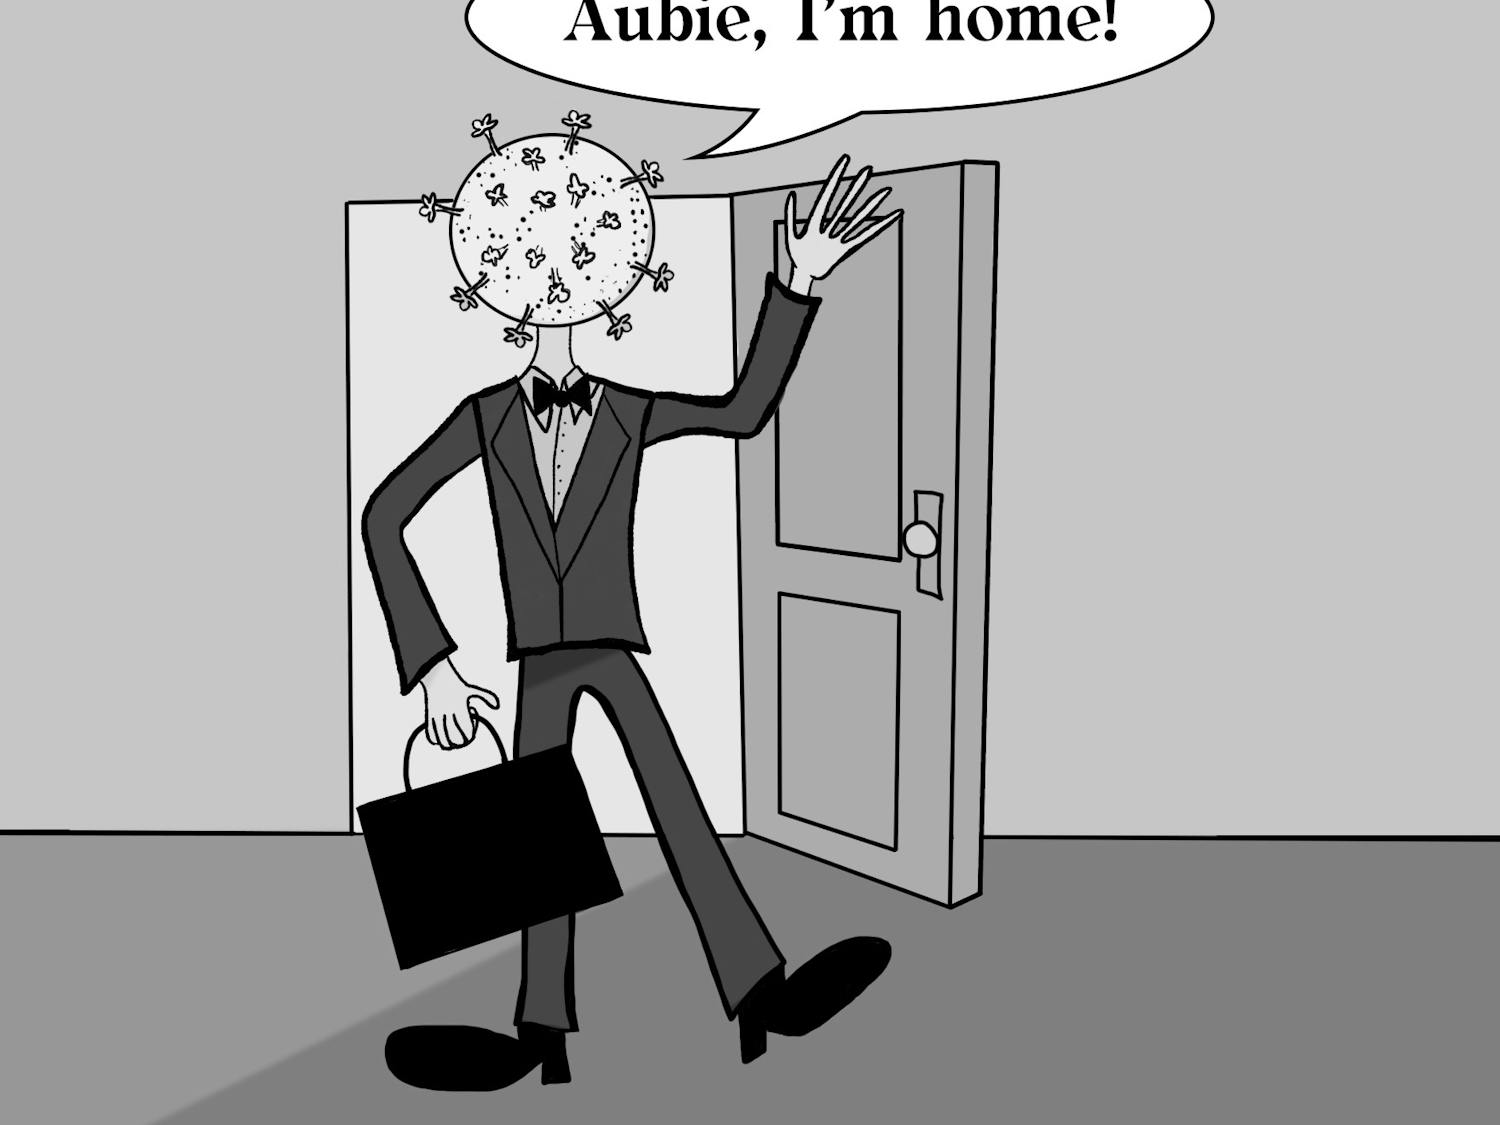 Aubie, I'm home!